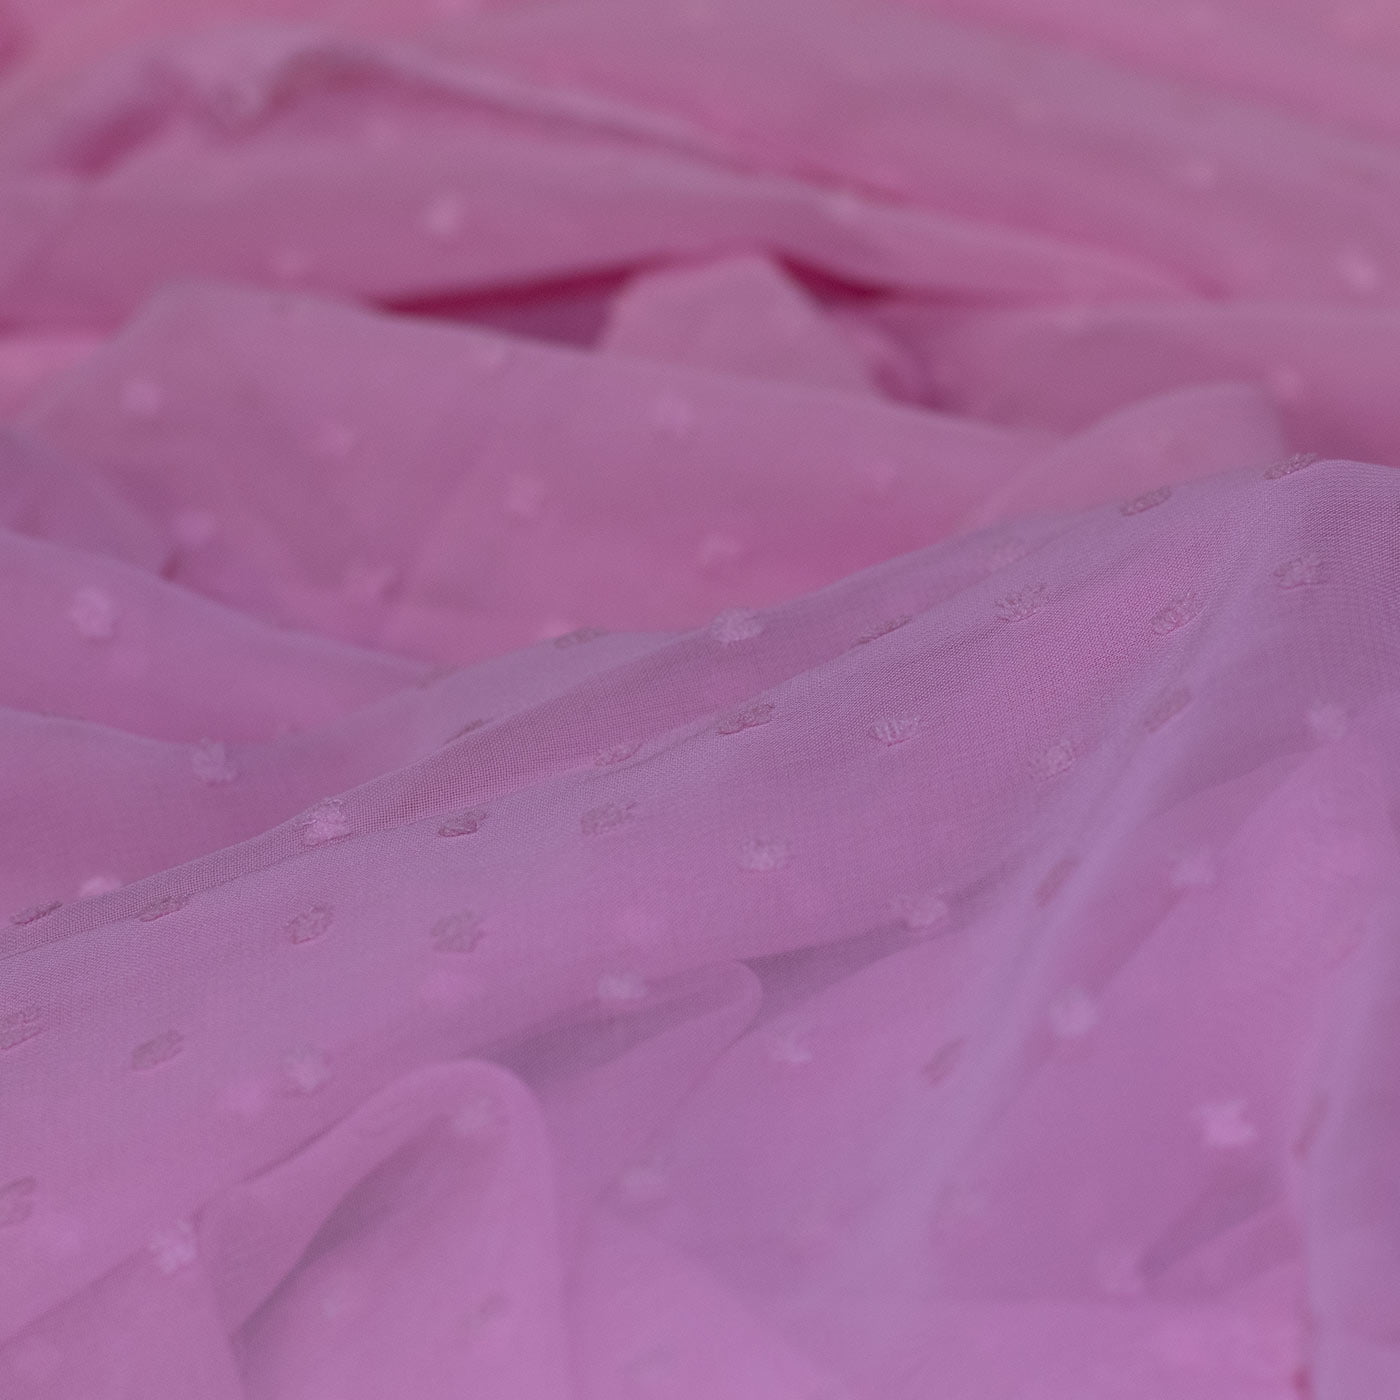 Baby Pink Dotted Chiffon Fabric